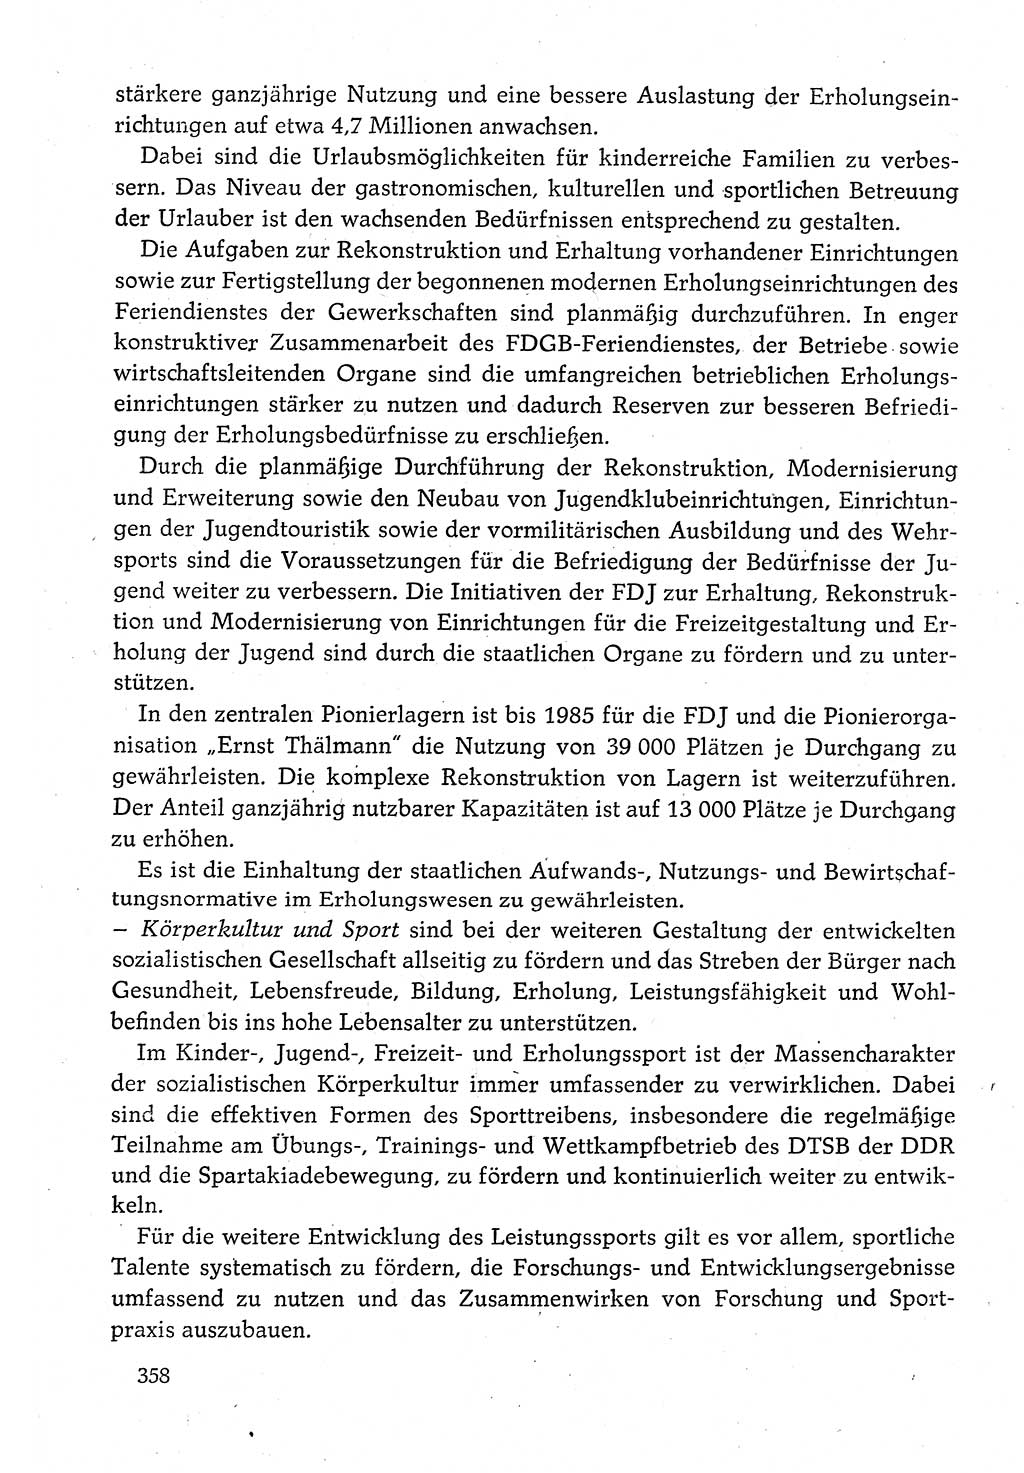 Dokumente der Sozialistischen Einheitspartei Deutschlands (SED) [Deutsche Demokratische Republik (DDR)] 1980-1981, Seite 358 (Dok. SED DDR 1980-1981, S. 358)